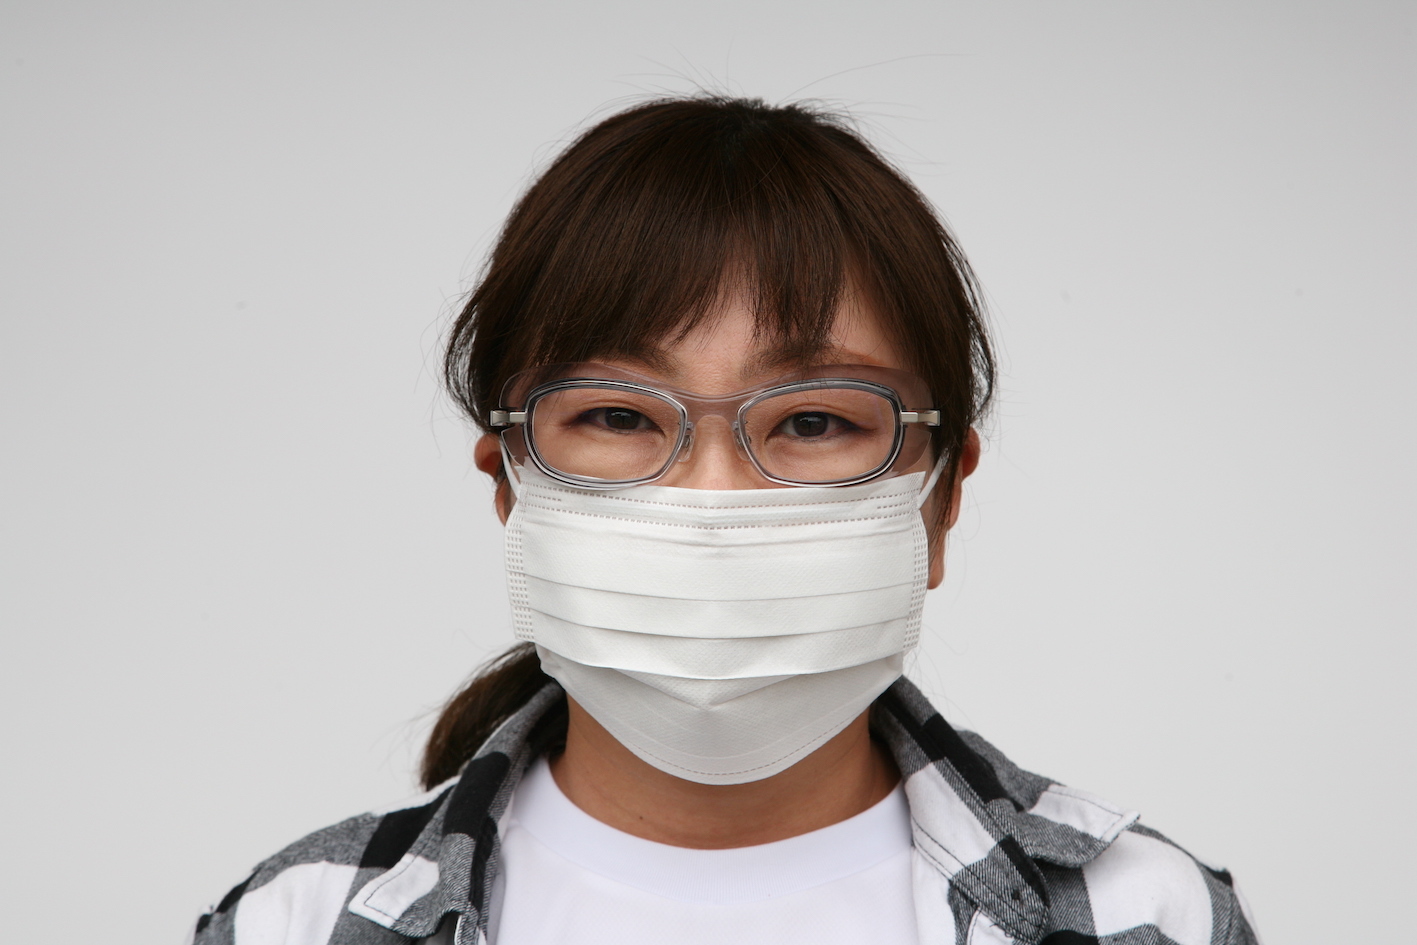 福井県発アイウェアファクトリーブランド Factory900 が新型コロナウイルス感染症対策にゴーグル型メガネを販売 青山眼鏡株式会社のプレスリリース